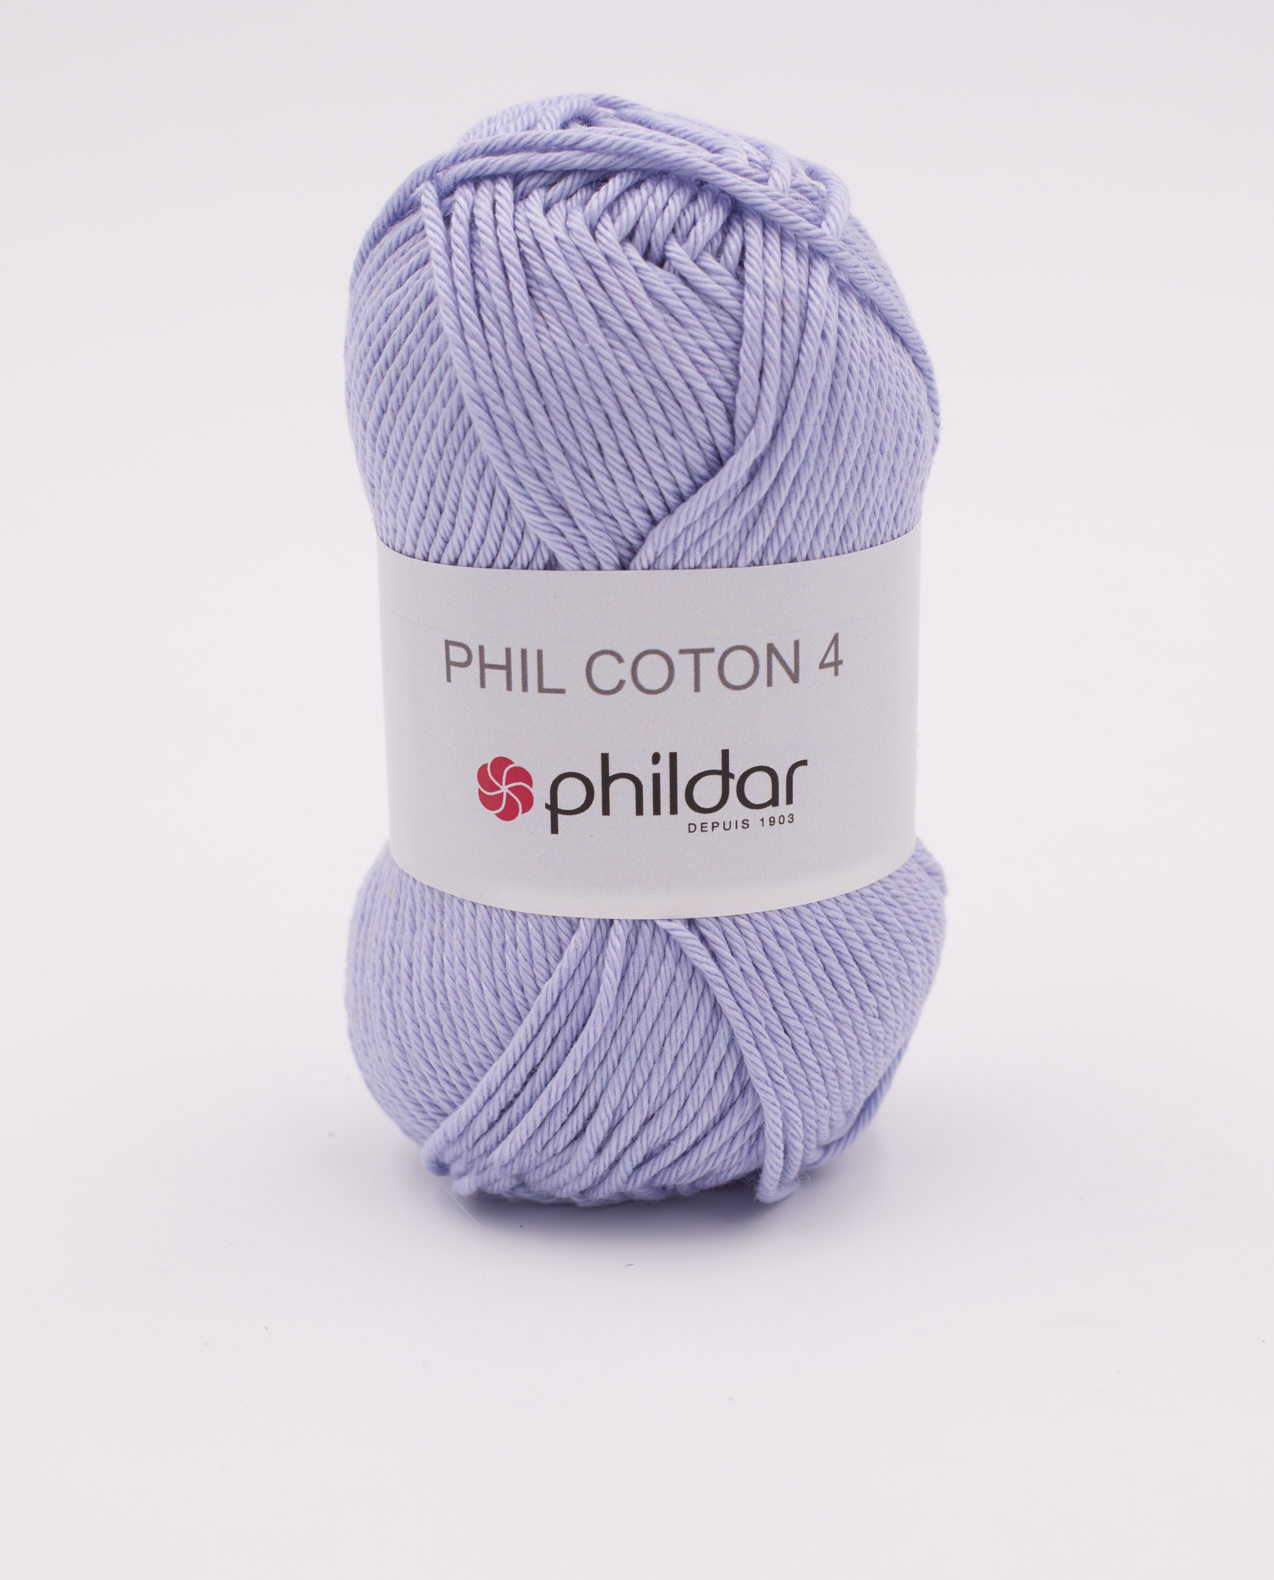 Phildar Phil Coton 3 kleur Parme